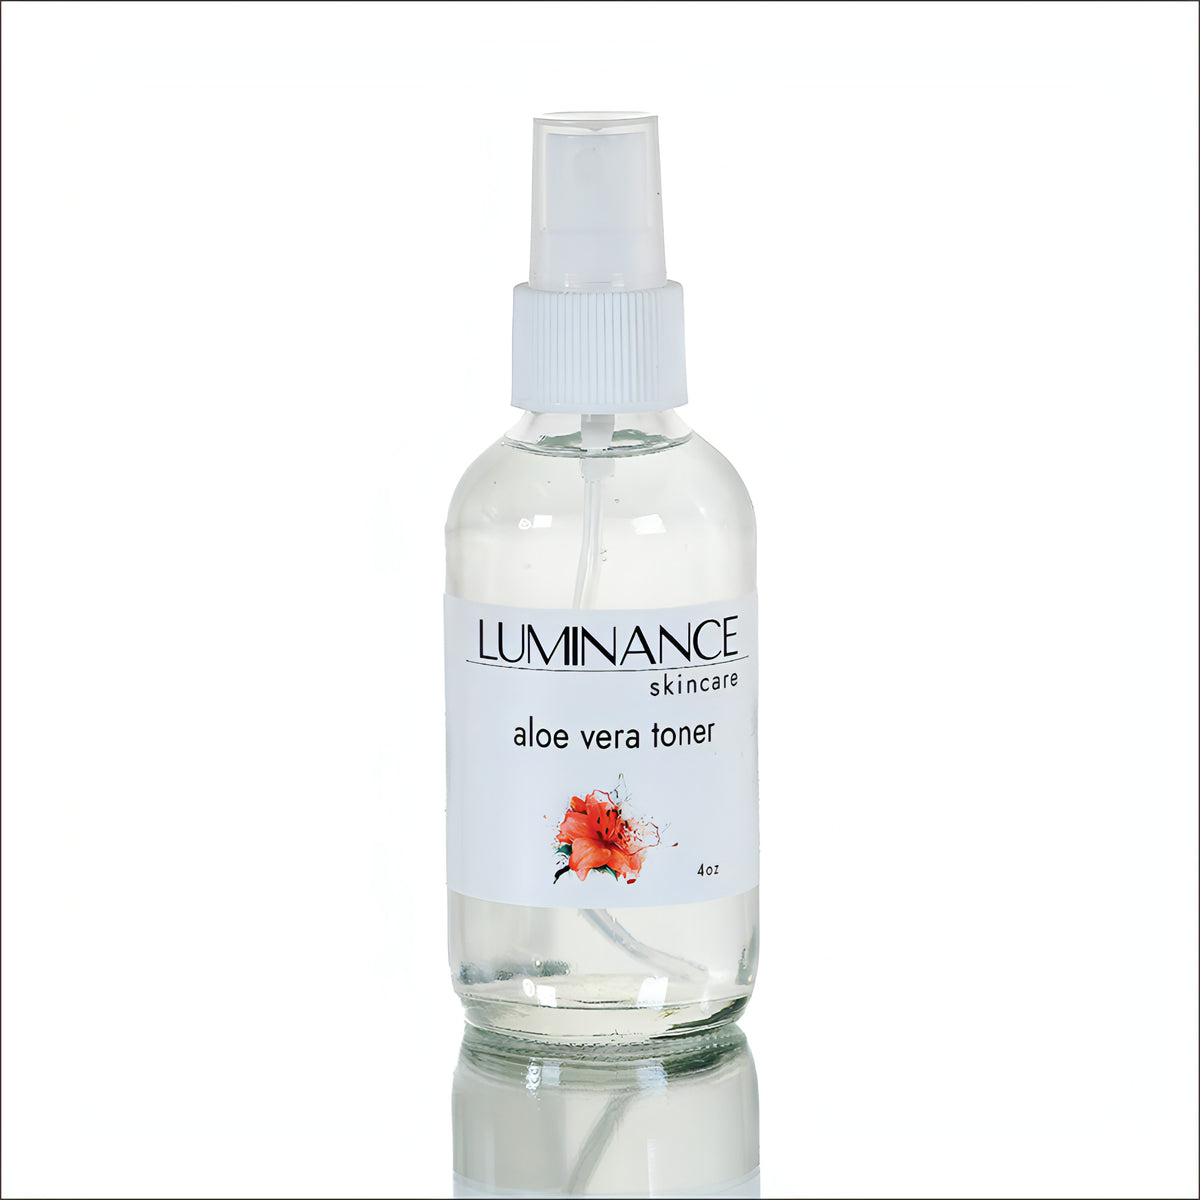 Aloe Vera Luminance Skincare Toner. 4 oz. Organic. 100% Plant based. No alcohols or astringents.